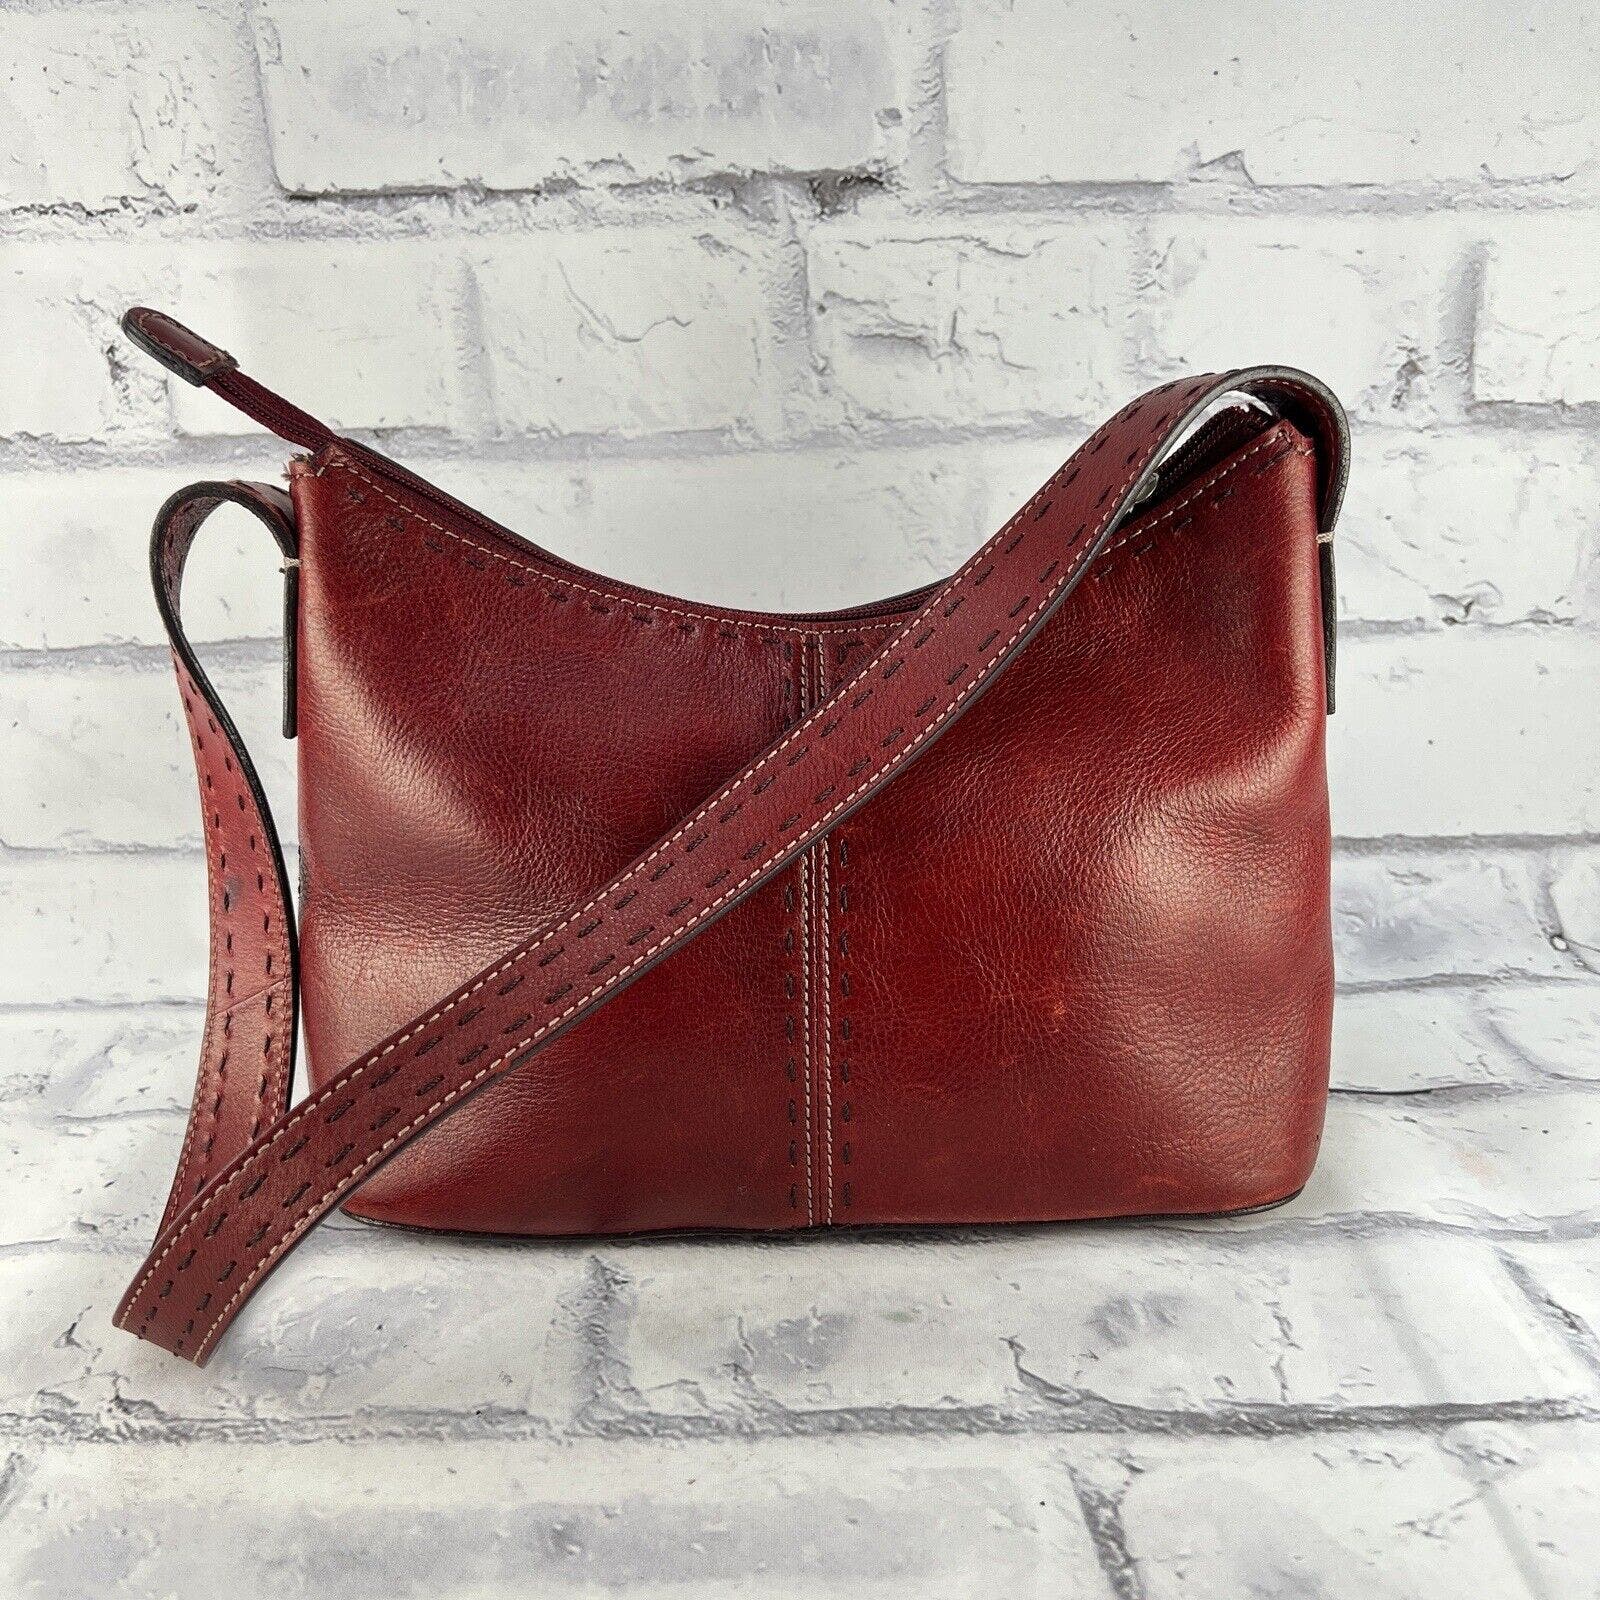 Fossil Leather Shoulder Bag Purse Handbag Red Small Pocketbook